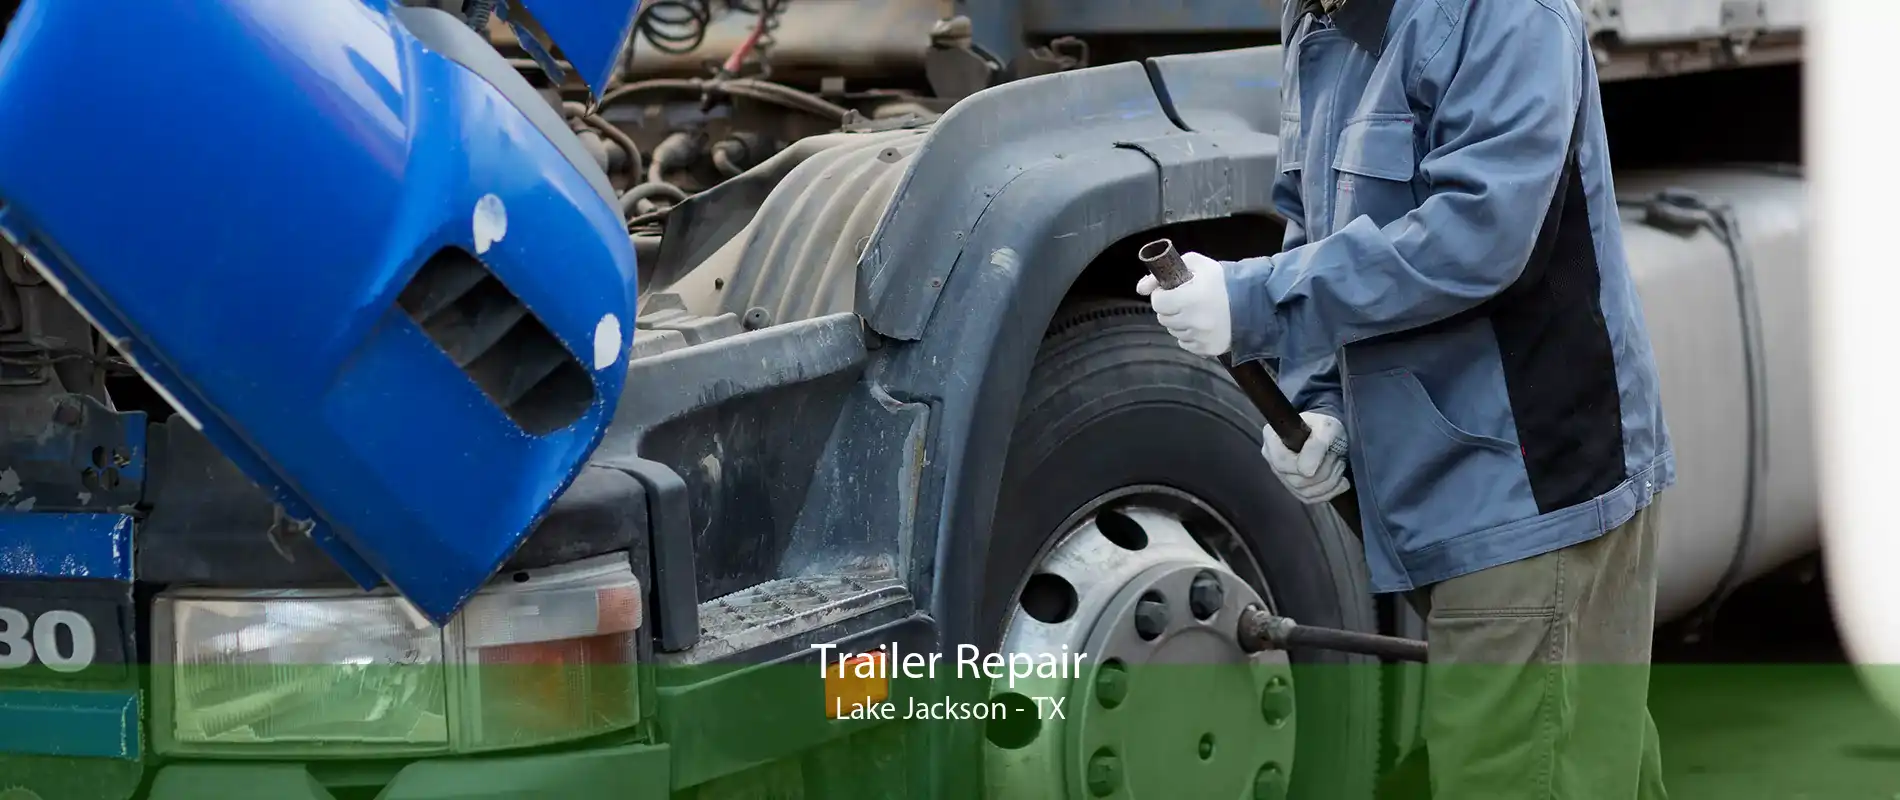 Trailer Repair Lake Jackson - TX